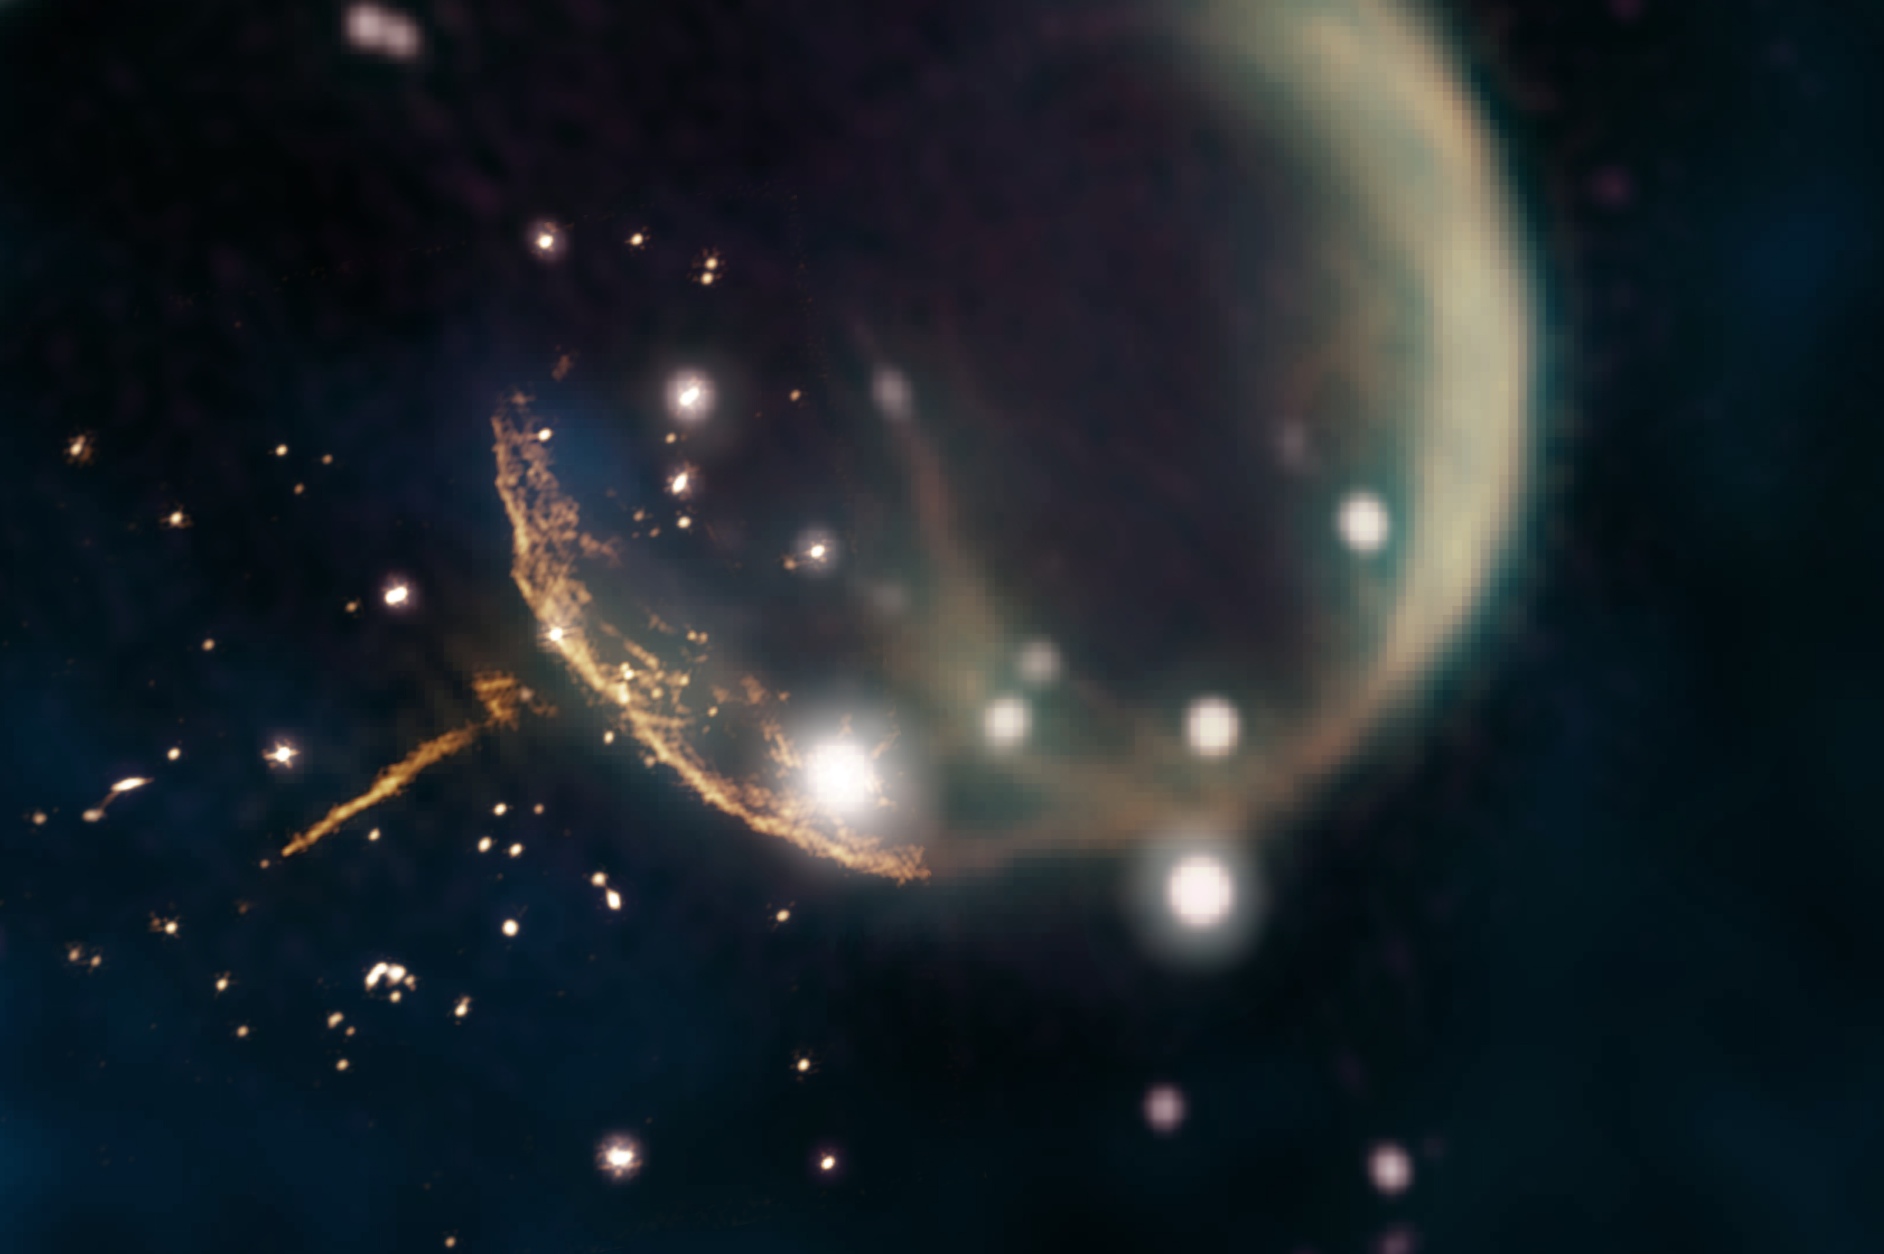 Le reste de la supernova CTB 1 ressemble à une bulle fantomatique sur cette image, qui associe les nouvelles observations à 1,5 gigahertz du radiotélescope Very Large Array ou VLA (orange, proche du centre) à des observations plus anciennes provenant du Canadian Galactic Plane Survey de l’observatoire fédéral de radioastrophysique (1,42 gigahertz, magenta et jaune ; 408 mégahertz, vert) et données infrarouges (bleu). Les données VLA révèlent clairement la trace droite brillante du pulsar J0002 + 6216 et le bord incurvé de la coquille du reste de la supernova. © Image composite de Jayanne English, Université du Manitoba, utilisant les données de NRAO/F. Schinzel et al., DRAO/Canadian Galactic Plane Survey et Nasa/Iras